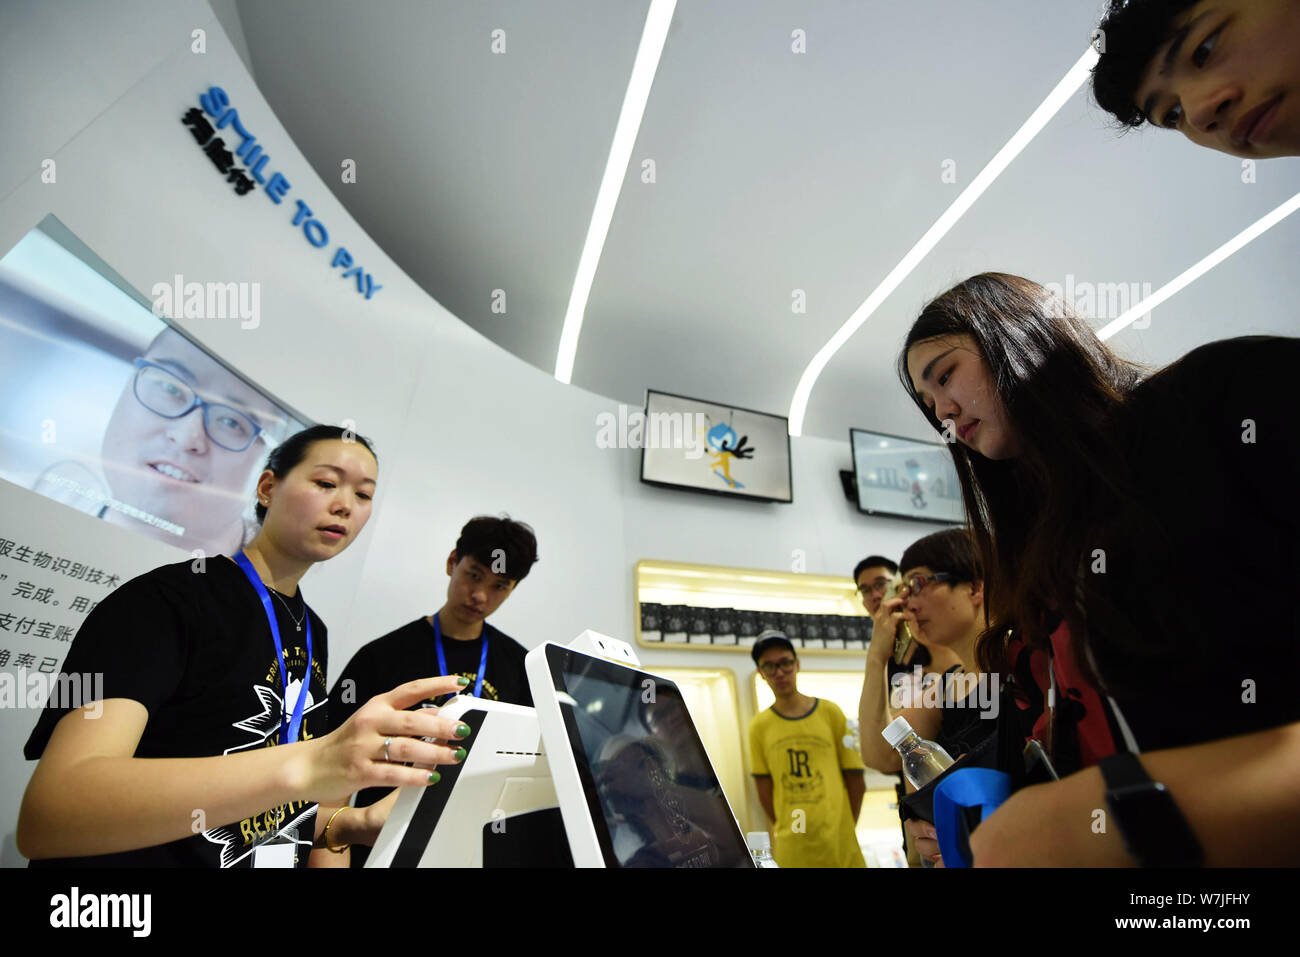 ---- Besucher probieren Sie den 'Smile' am Stand von Ant Finanzielle, eine Tochtergesellschaft der Chinesischen e-commerce Riese Alibaba Group, während einer exhibitio Stockfoto